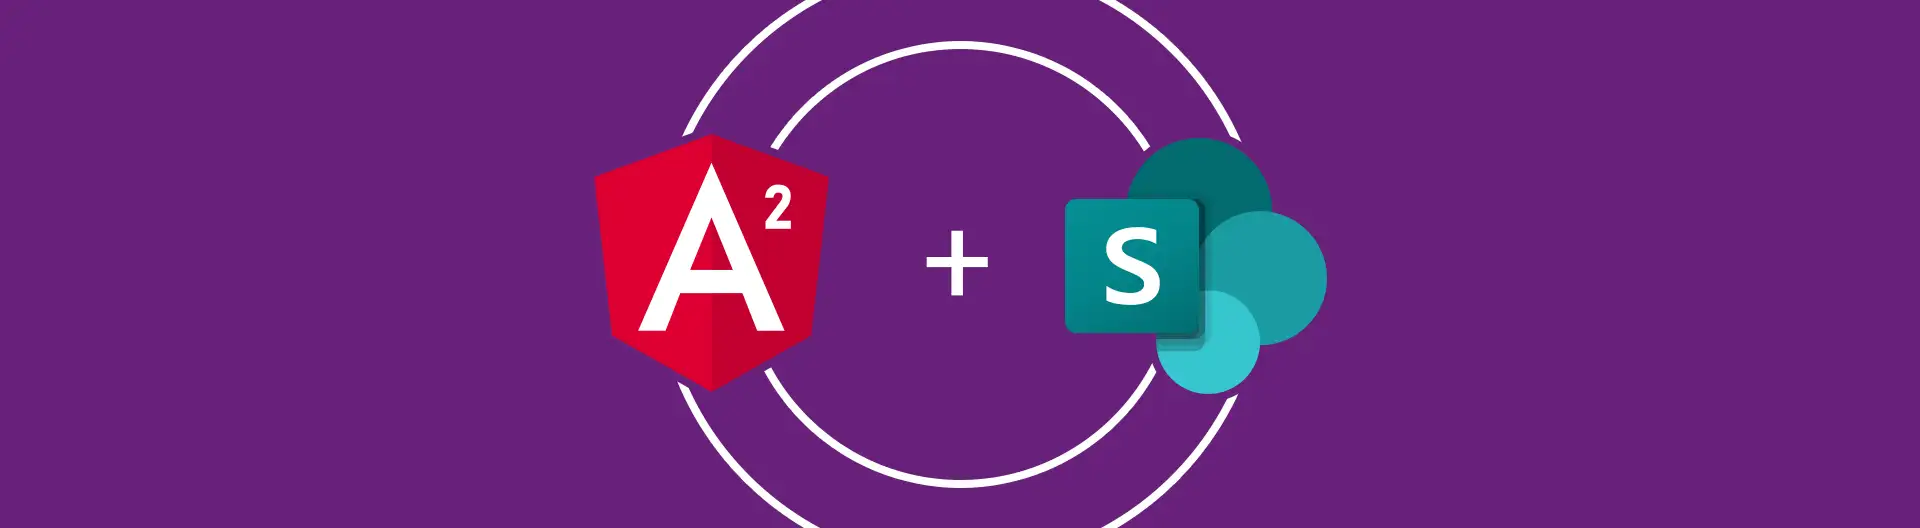 Integration von Angular 2 und SharePoint für innovative Business-Lösungen - Banner